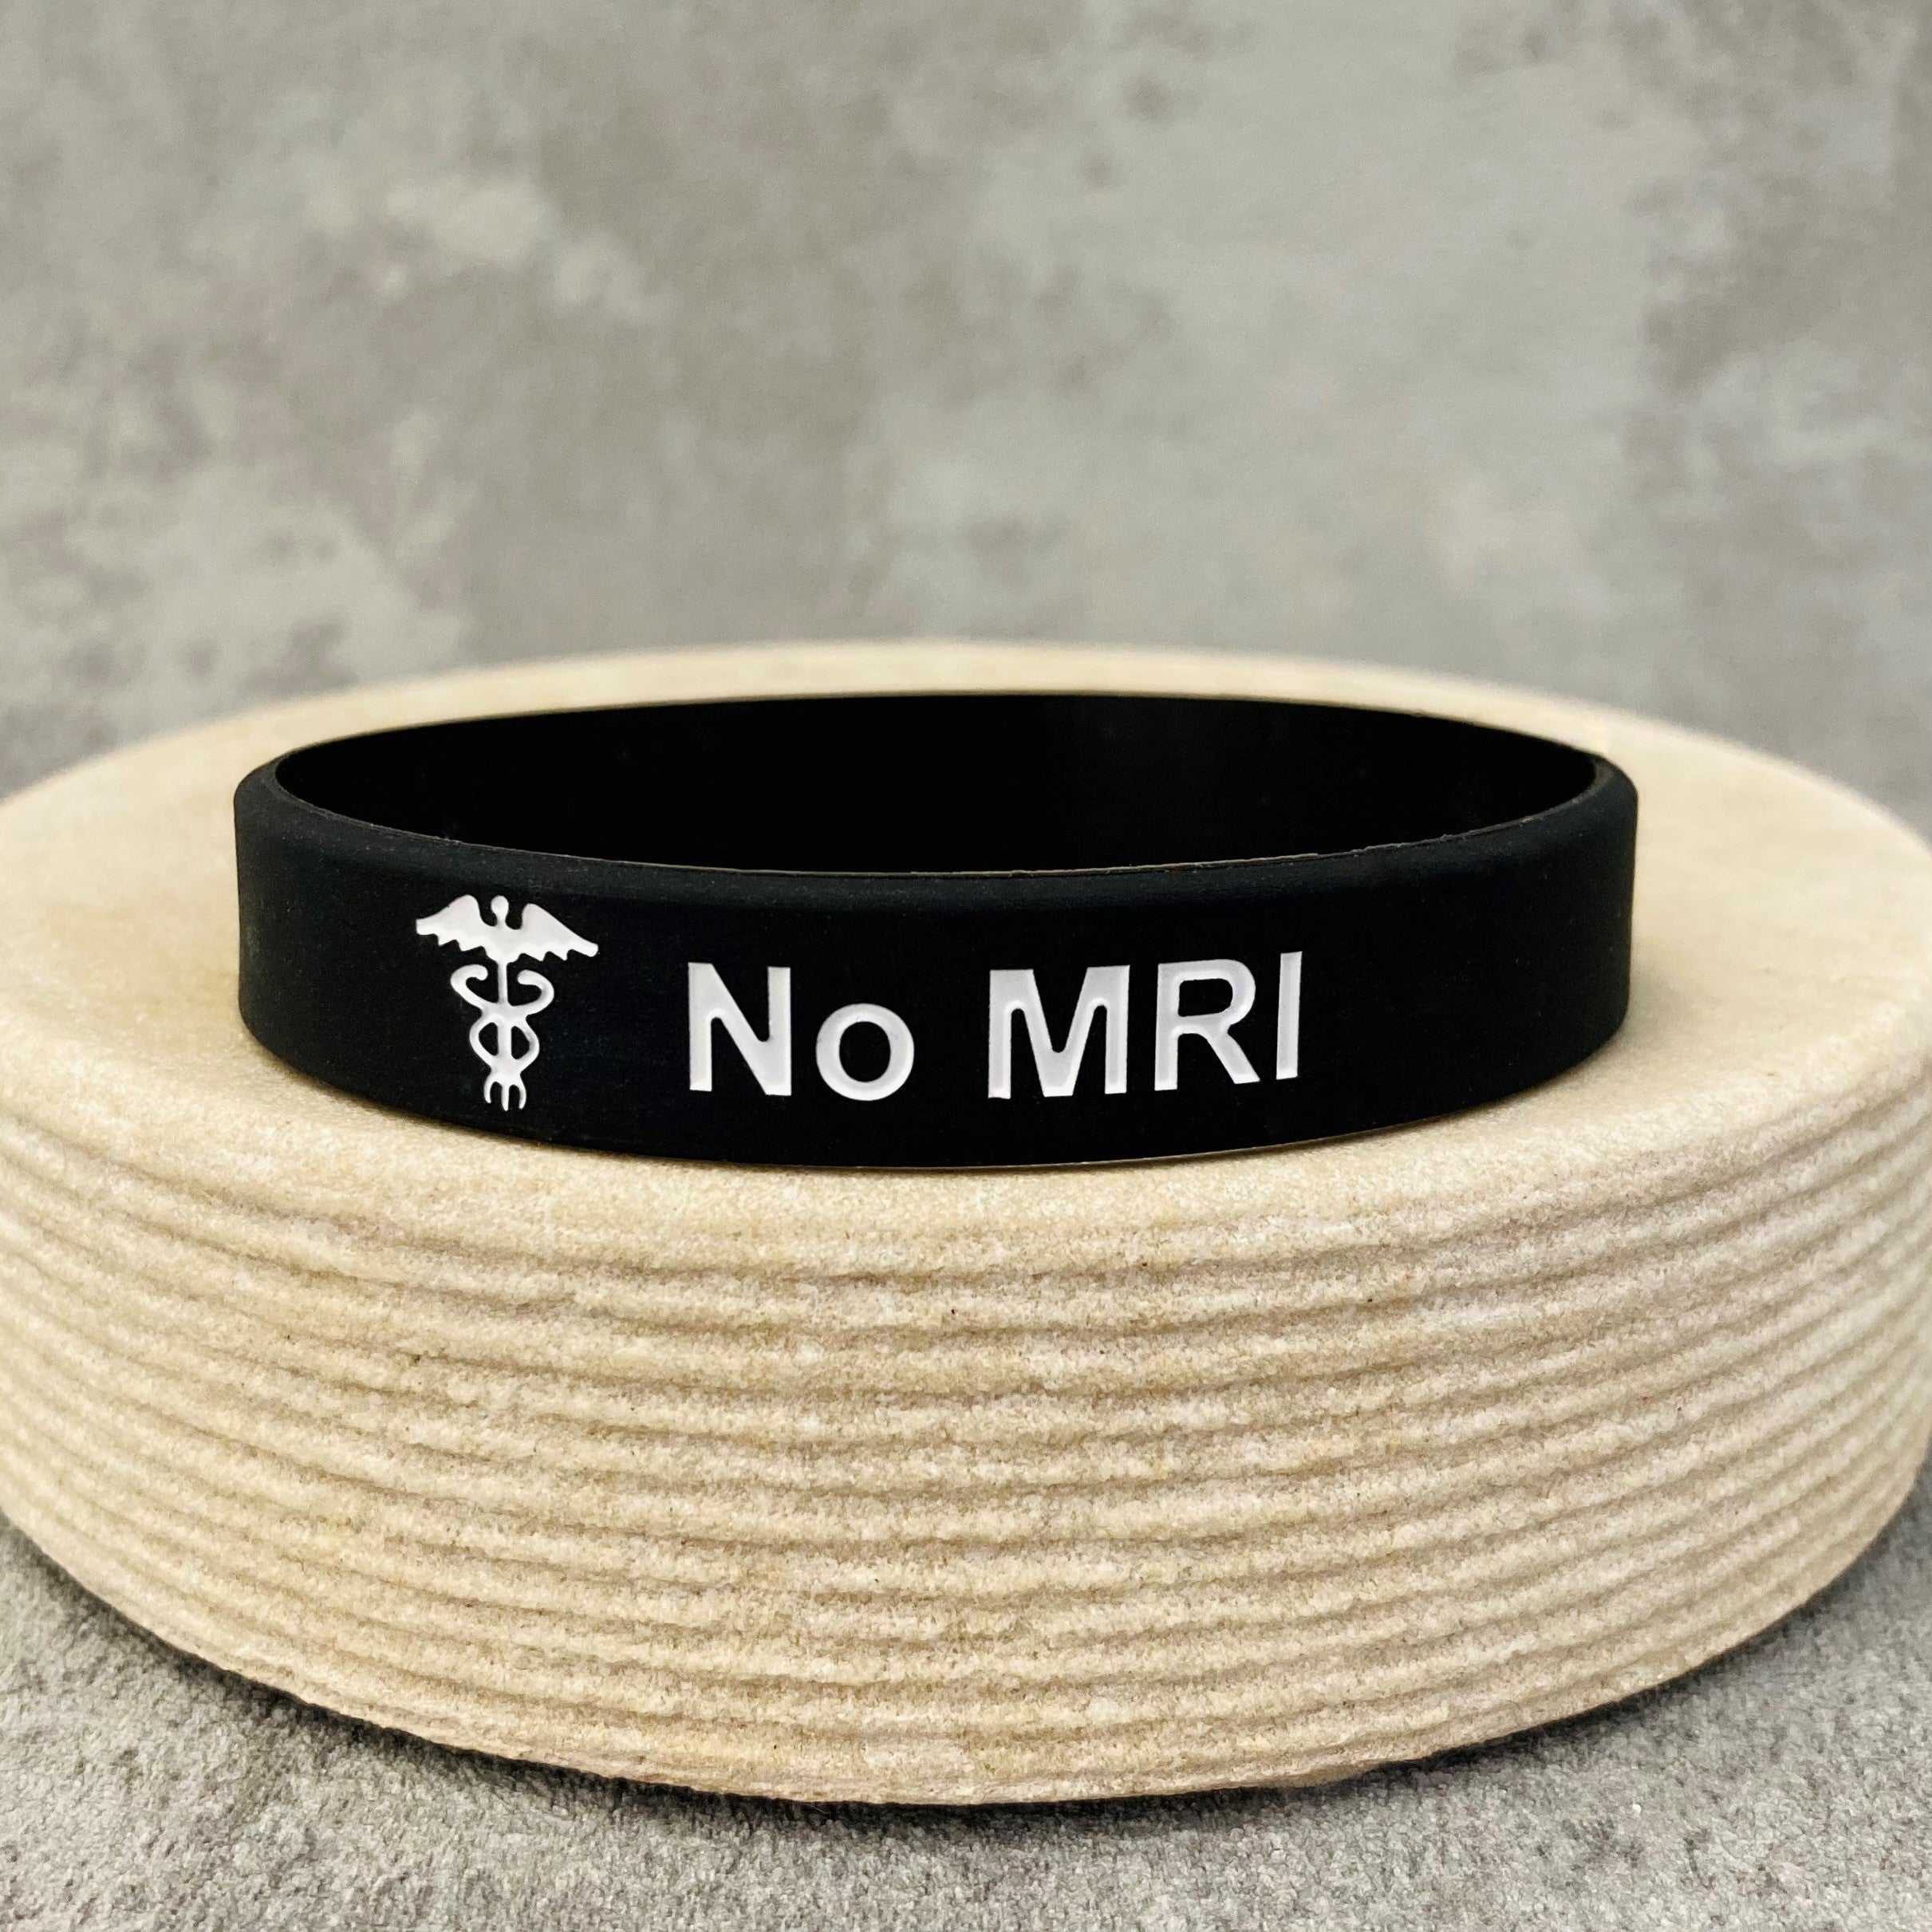 No MRI medical bracelet